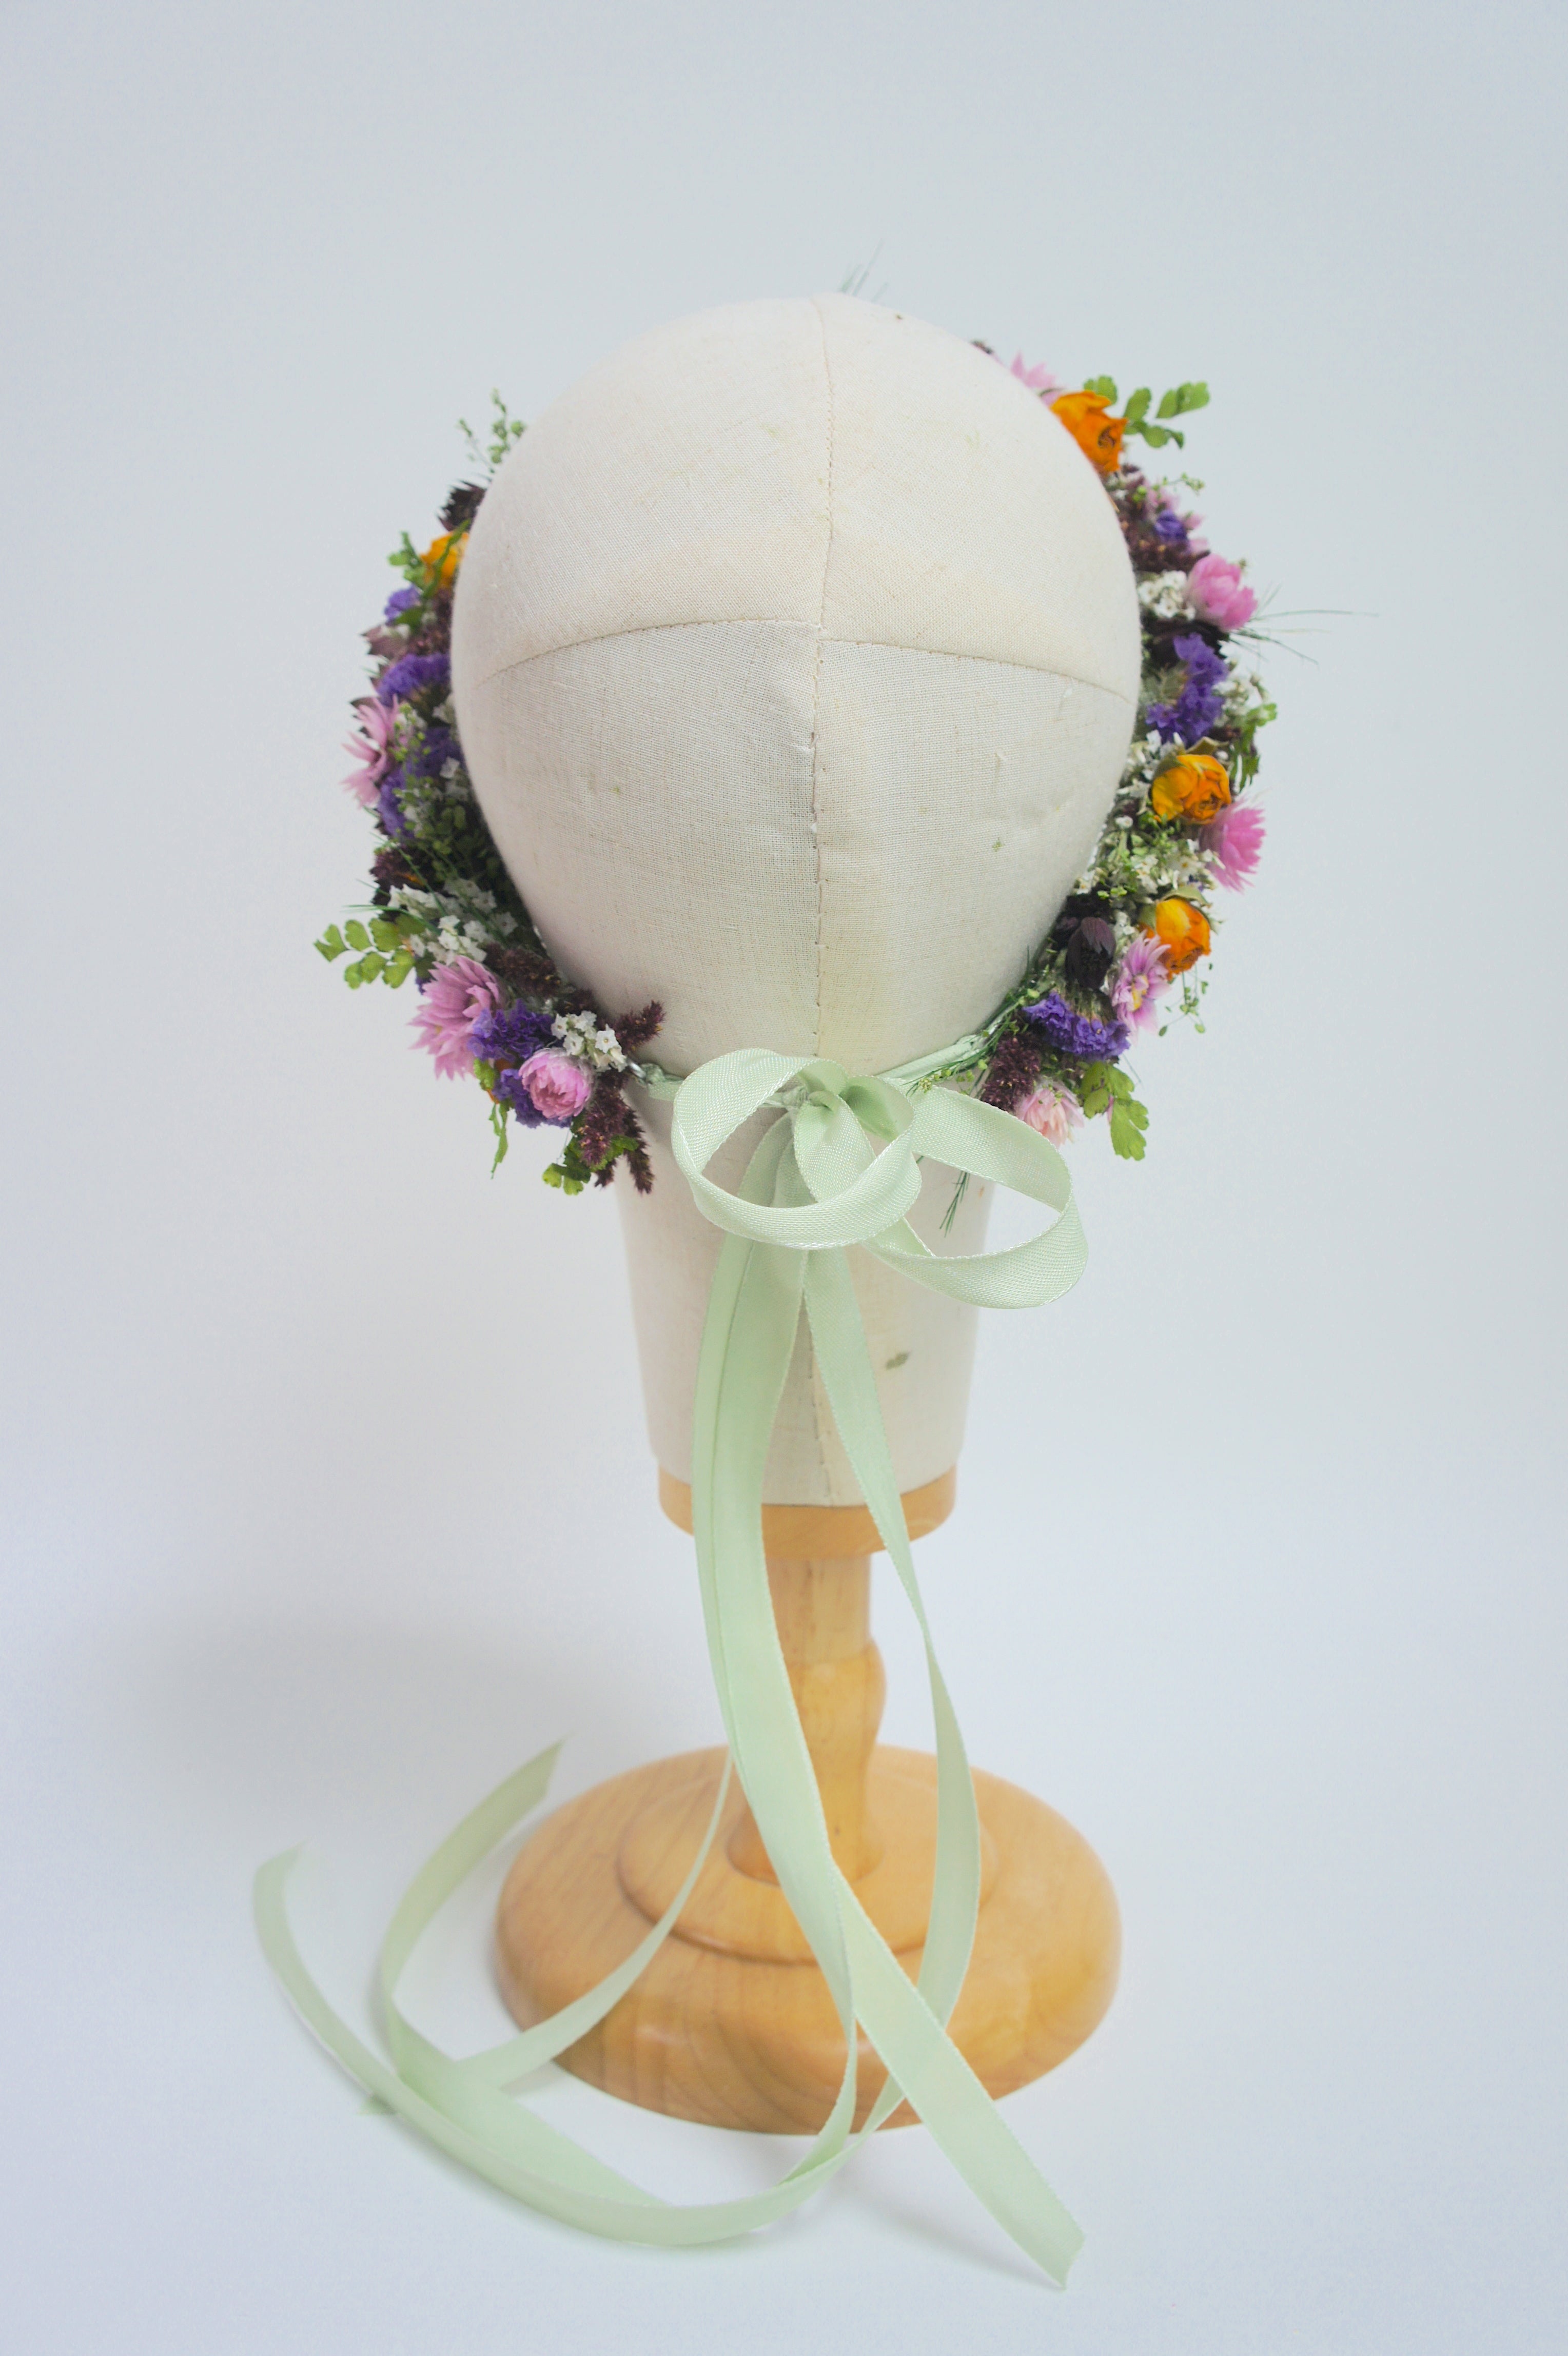 MARIE &amp; DER SOMMER- unsere neue Trockenblumenserie mit Brautstrauß, Haarkranz und Reversschmuck